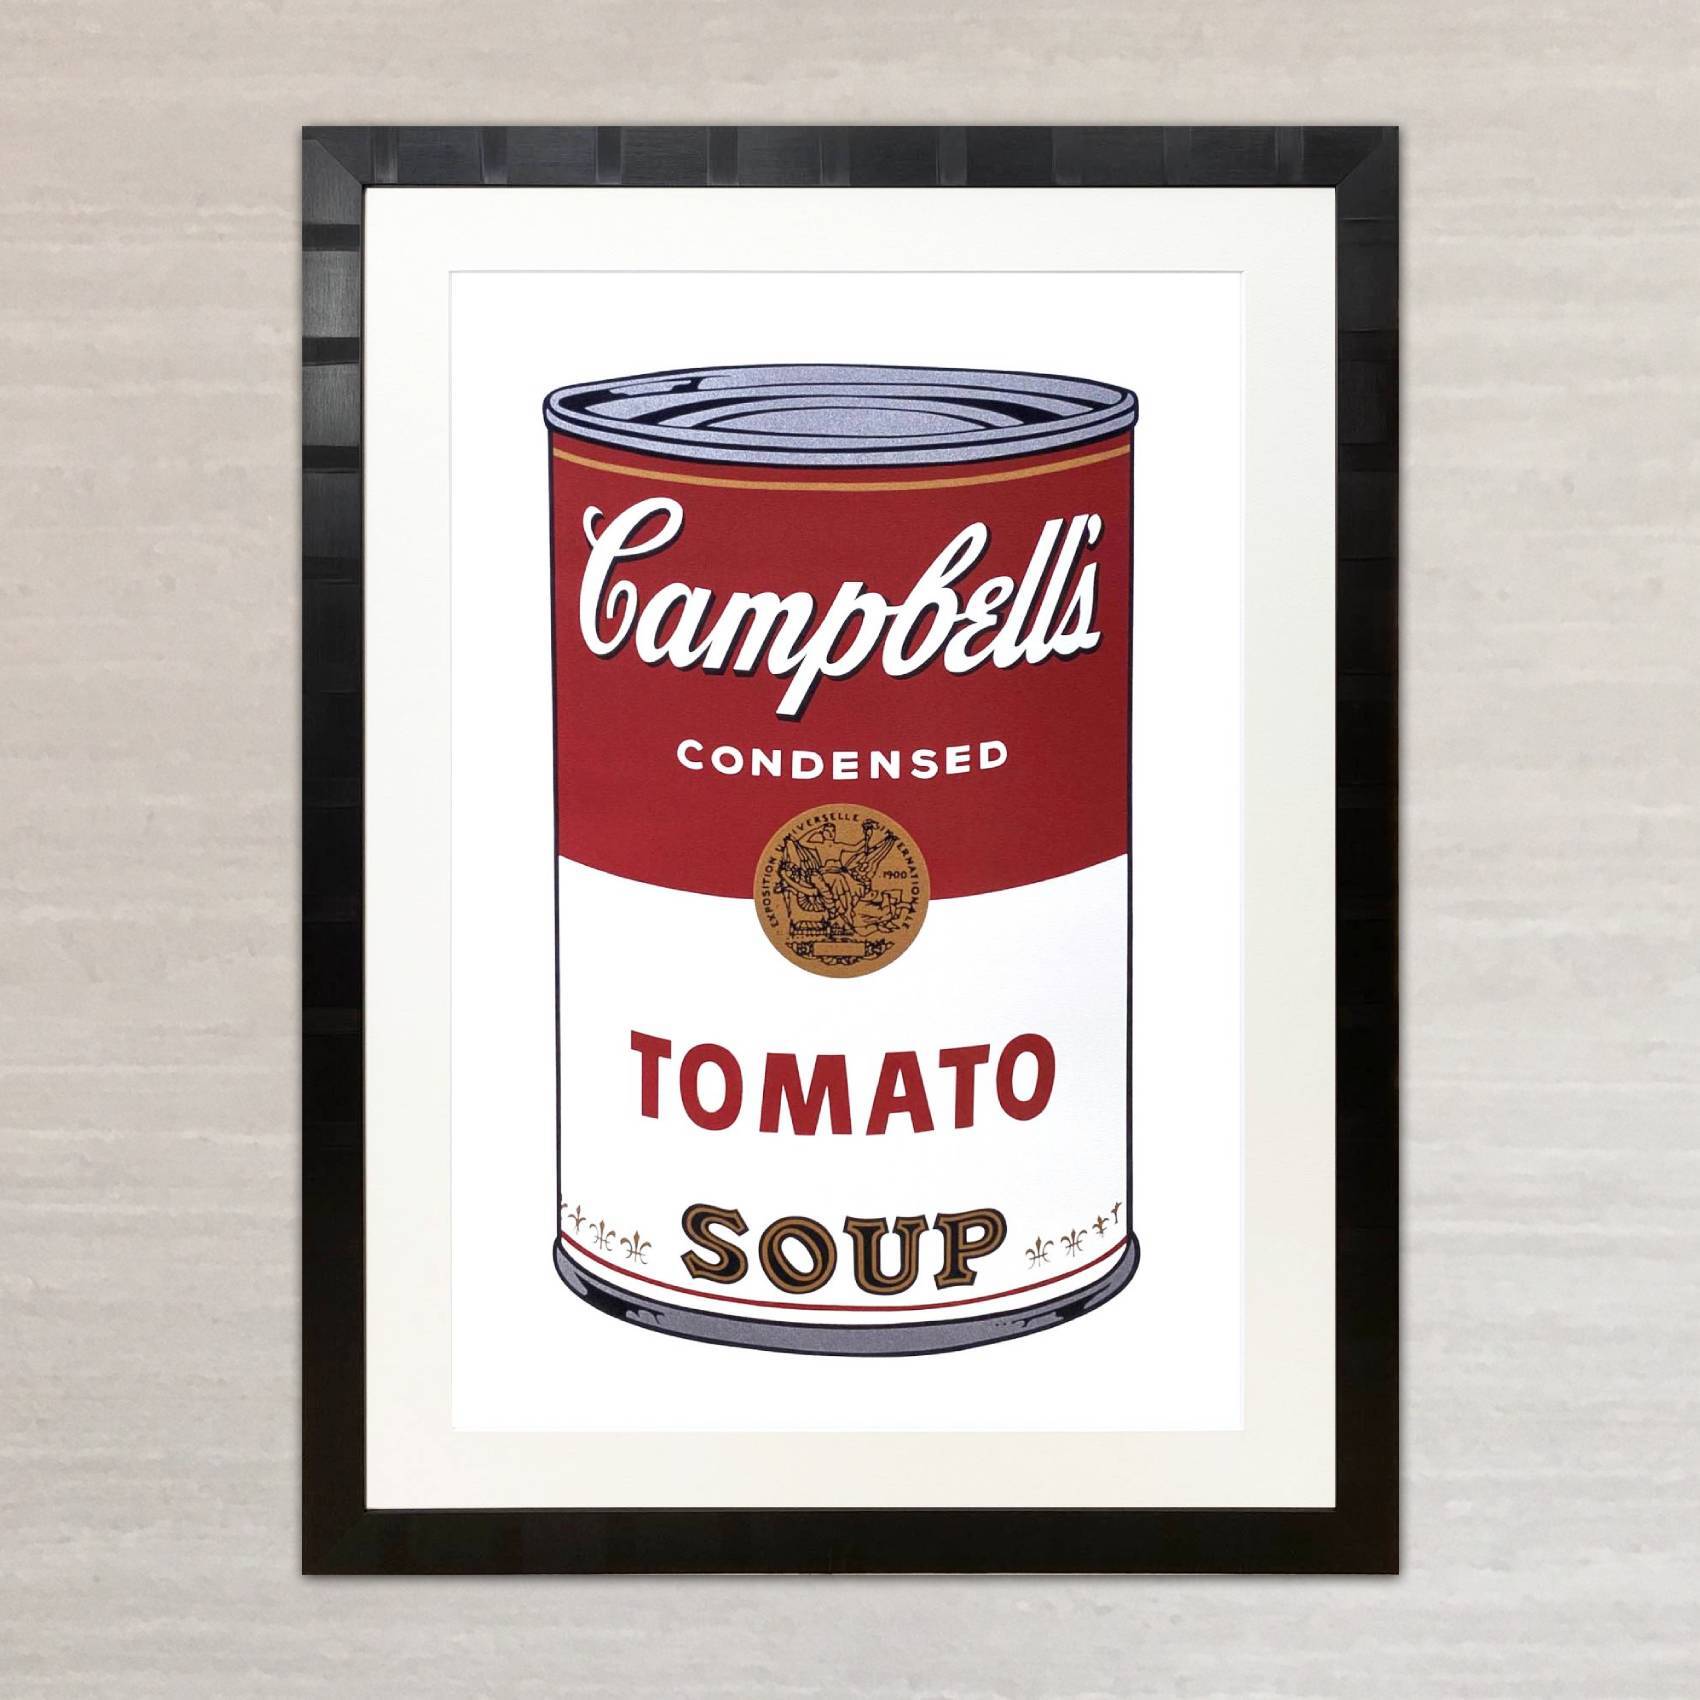 アンディ・ウォーホル「キャンベル・スープ(トマト)1968」展示用フック付大型サイズジークレ ポップアート 絵画